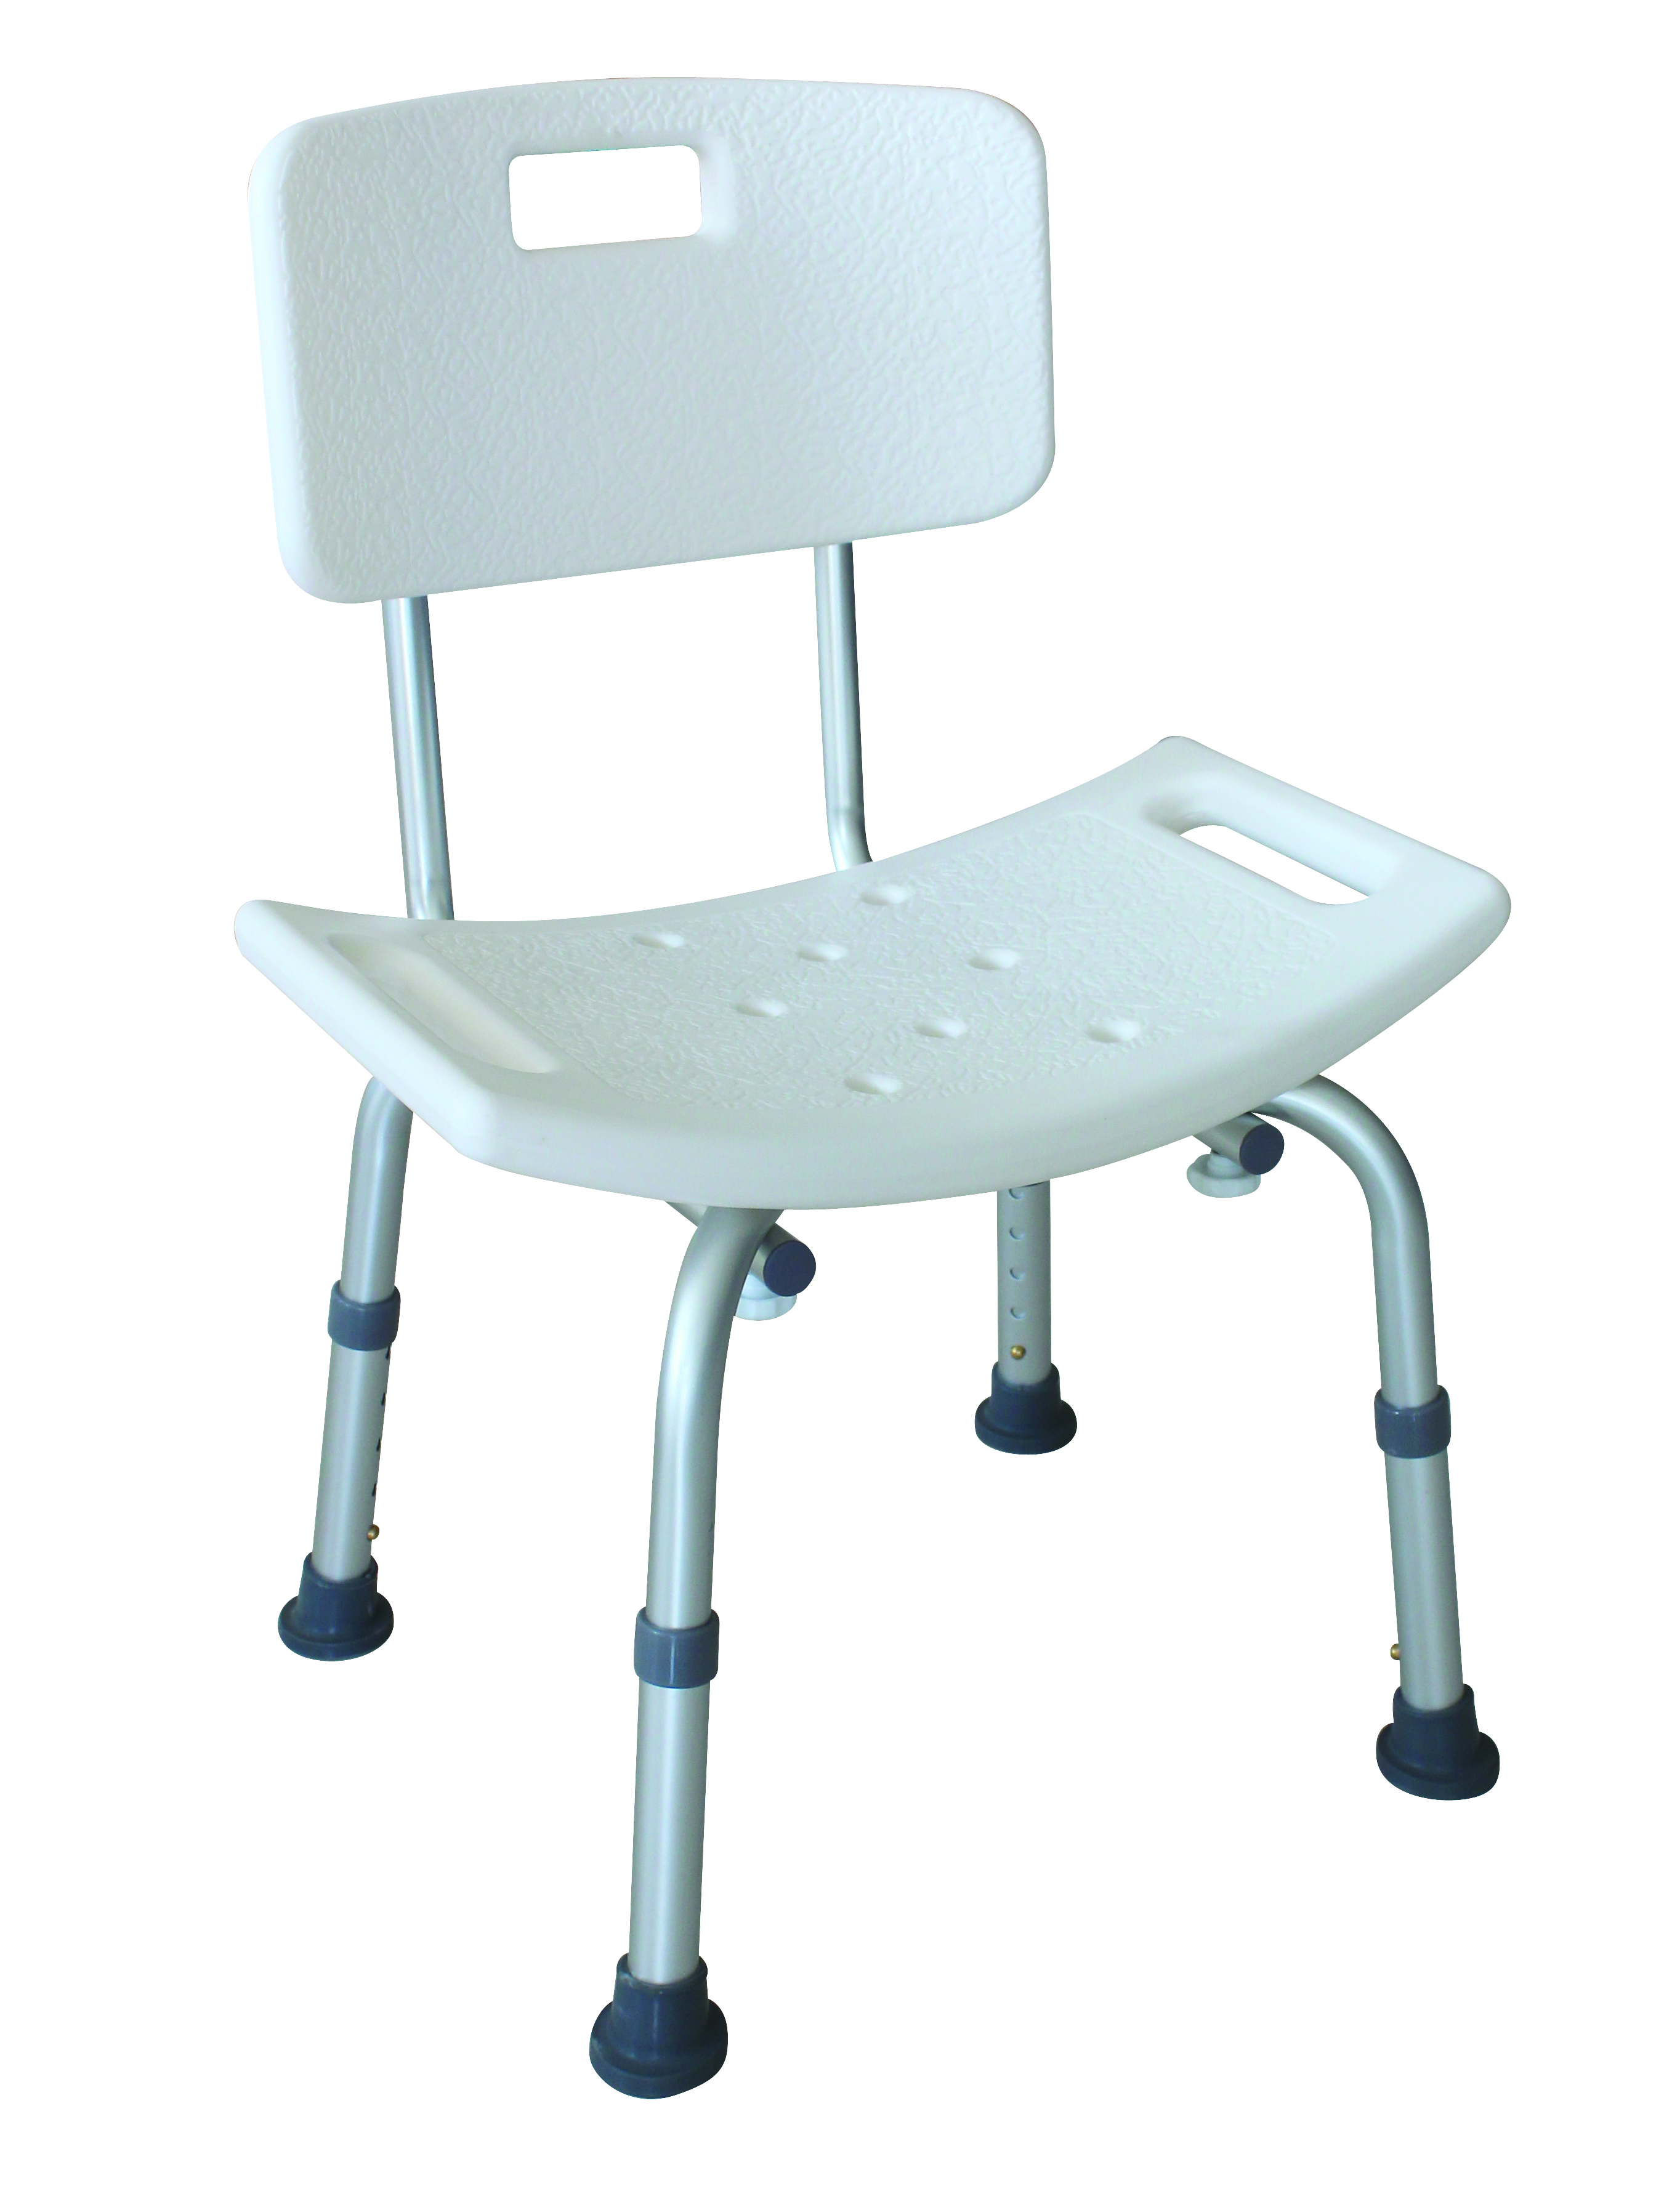 BAT-01 Chaise de bain en aluminium Romed avec dossier, orifi ces d‘égouttement et coussin antidérapant.